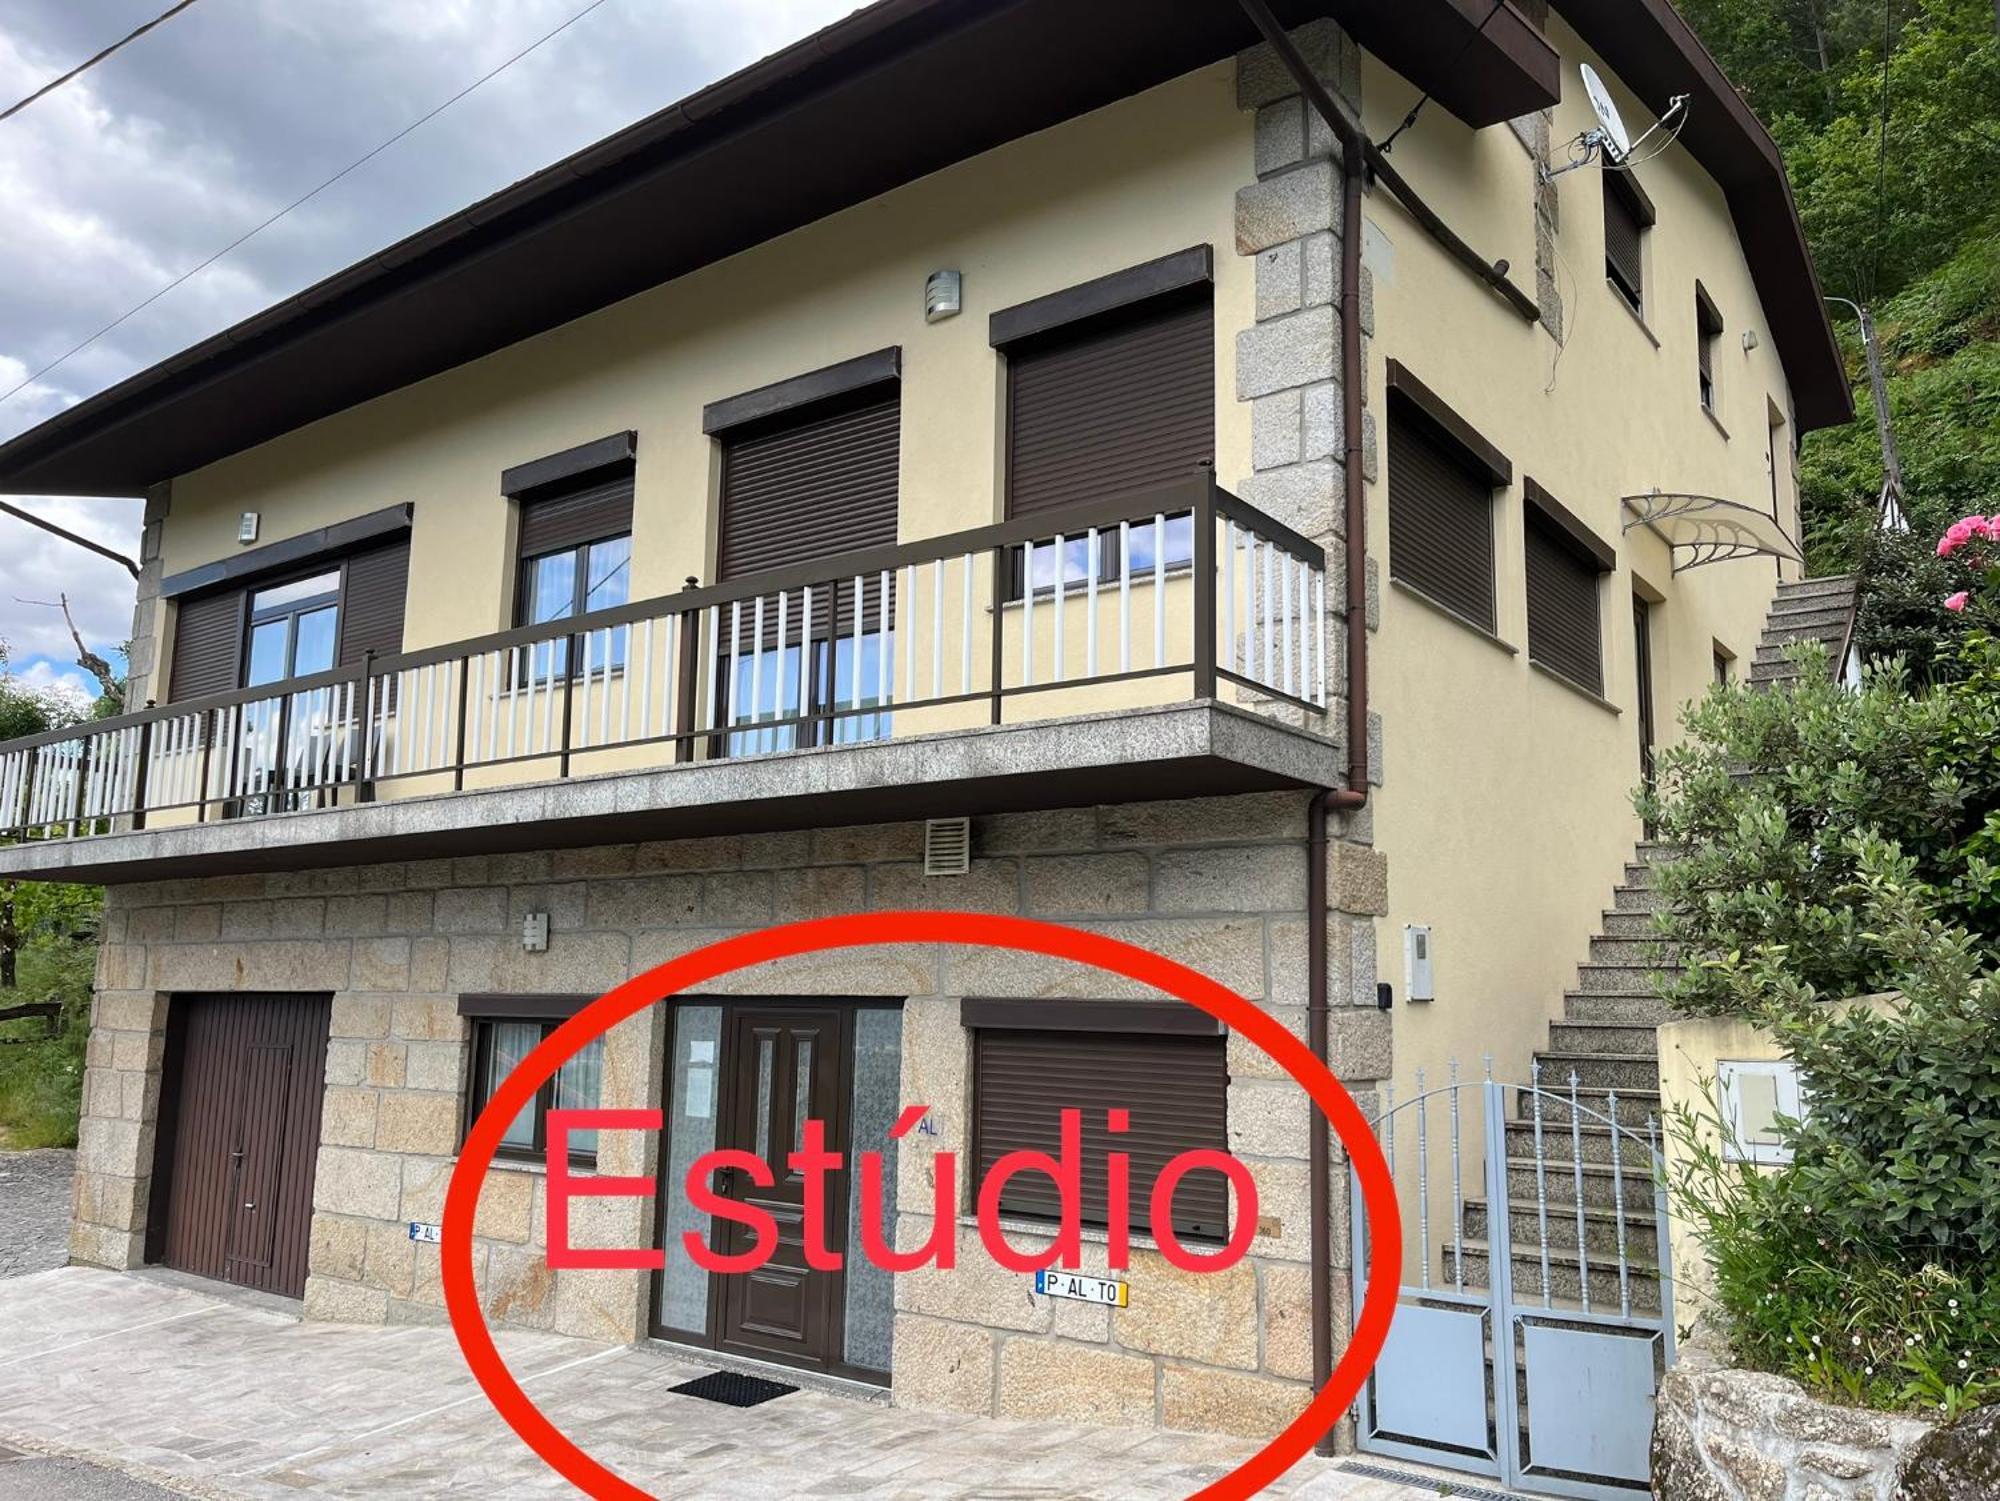 Casa De Casarelhos - Estudio - T1 - T2 - Zona Geres Apartment Exterior photo